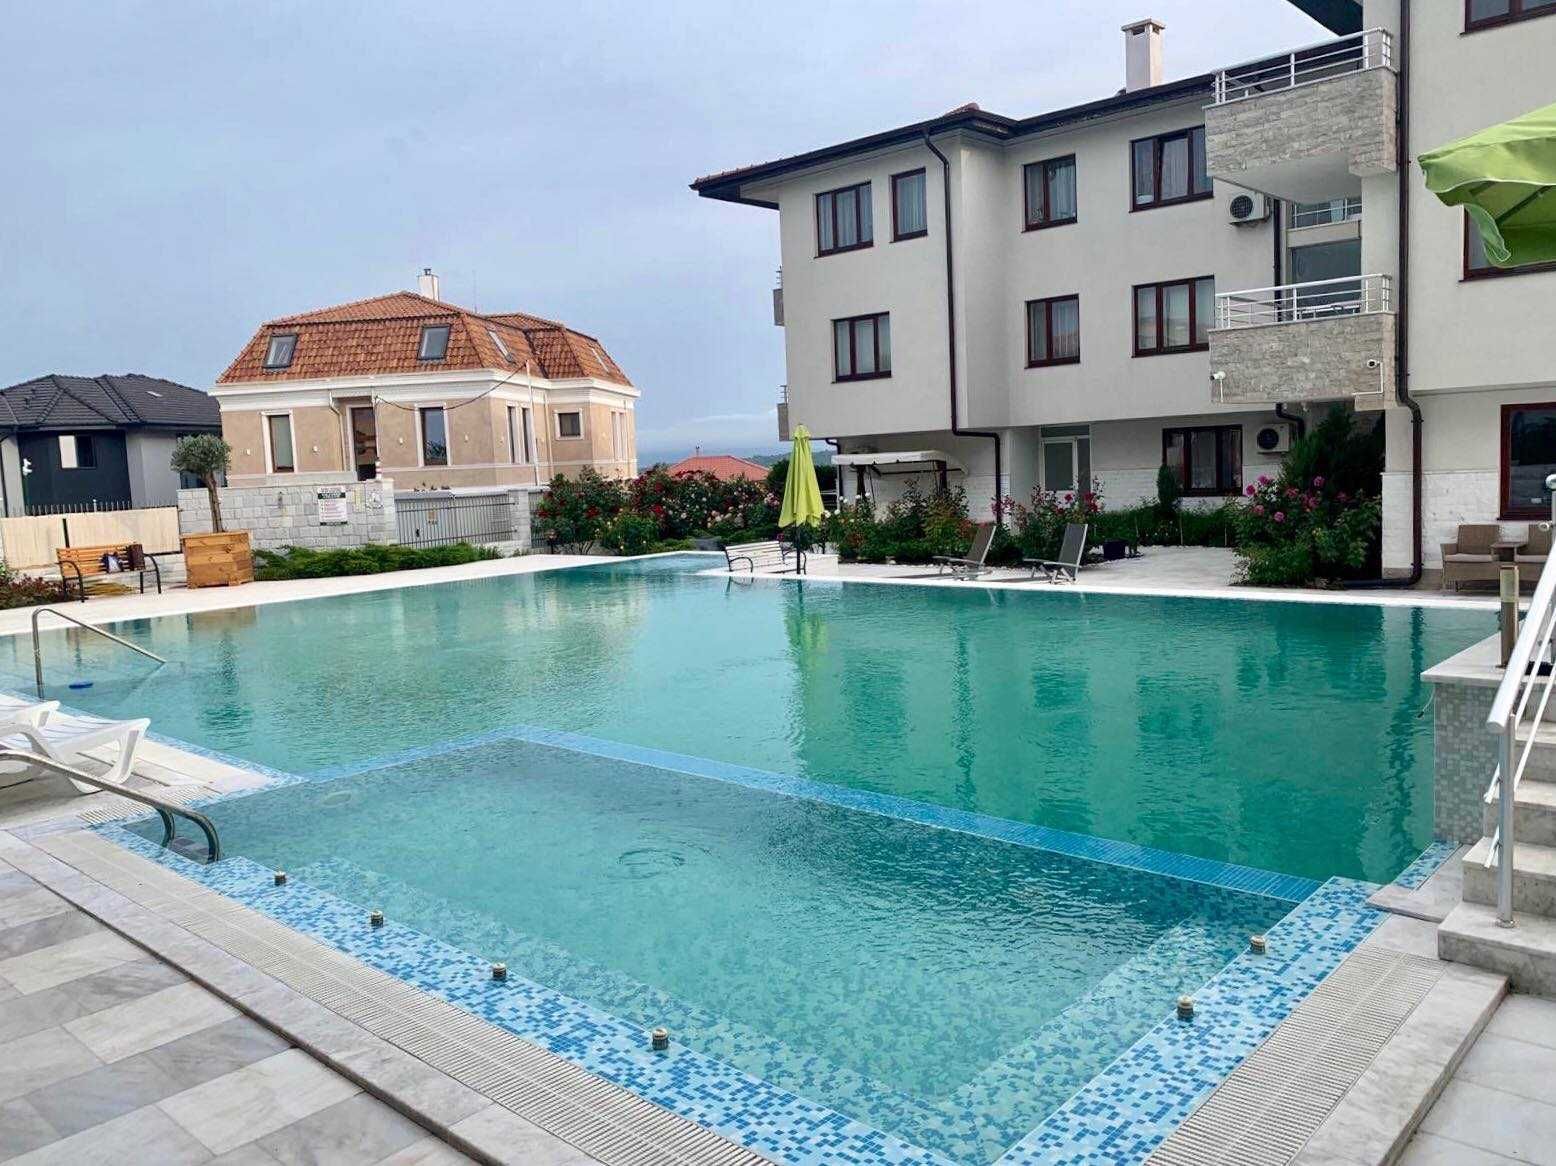 Двустаен апартамент Созопол под наем с гледка и басейн